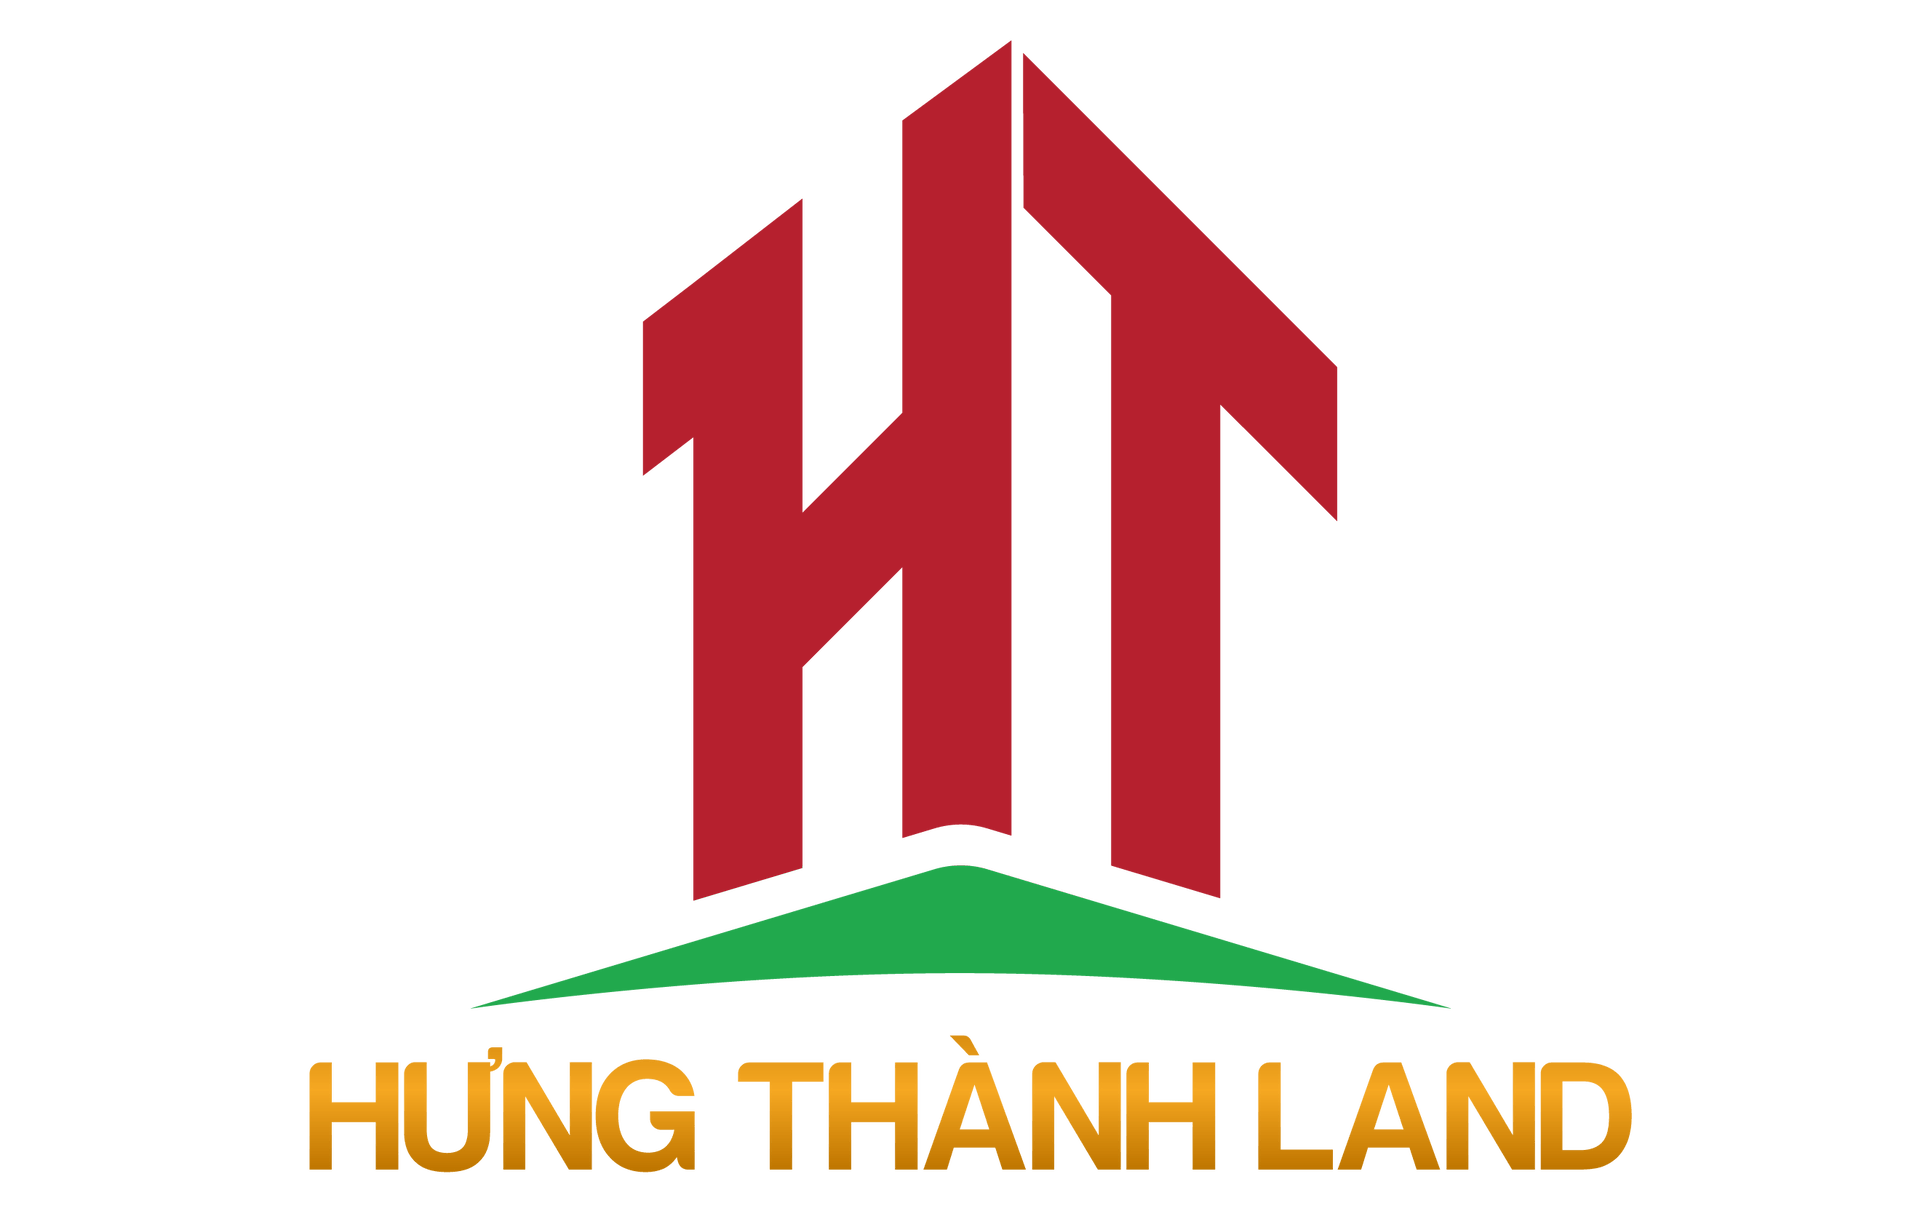 HƯNG THÀNH LAND